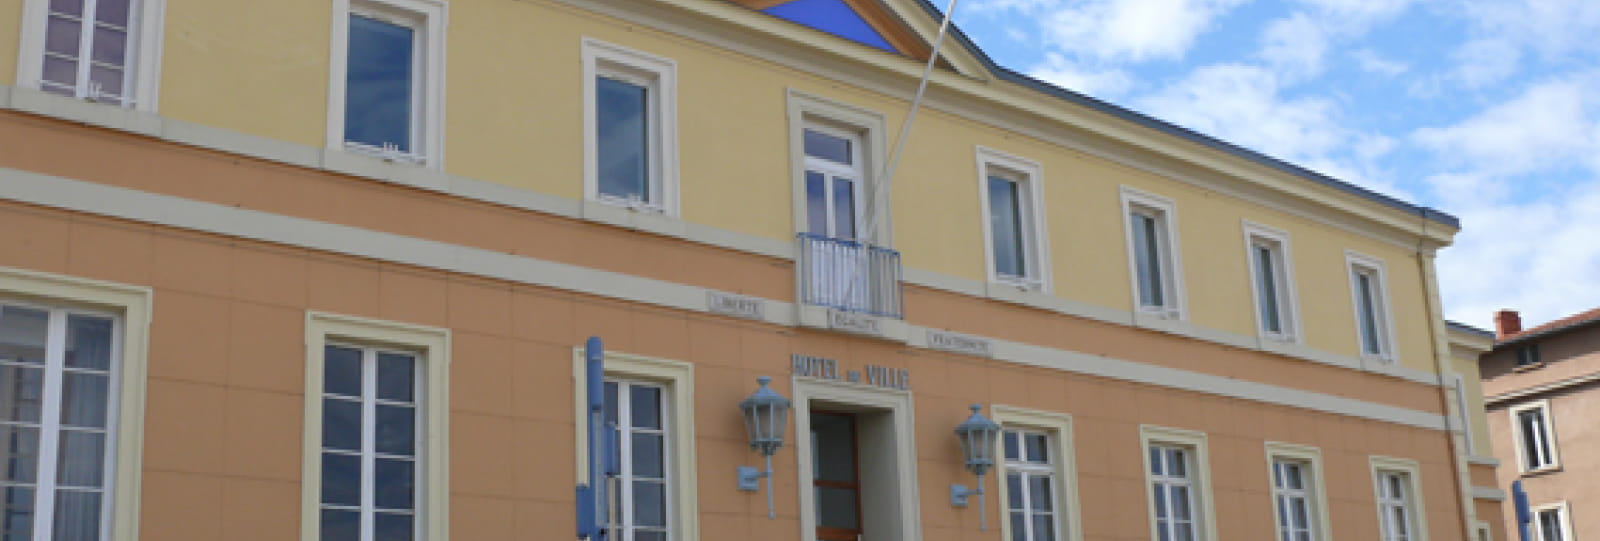 Hotel de Ville de Bourg de Péage (ex Cloître des Minimes)